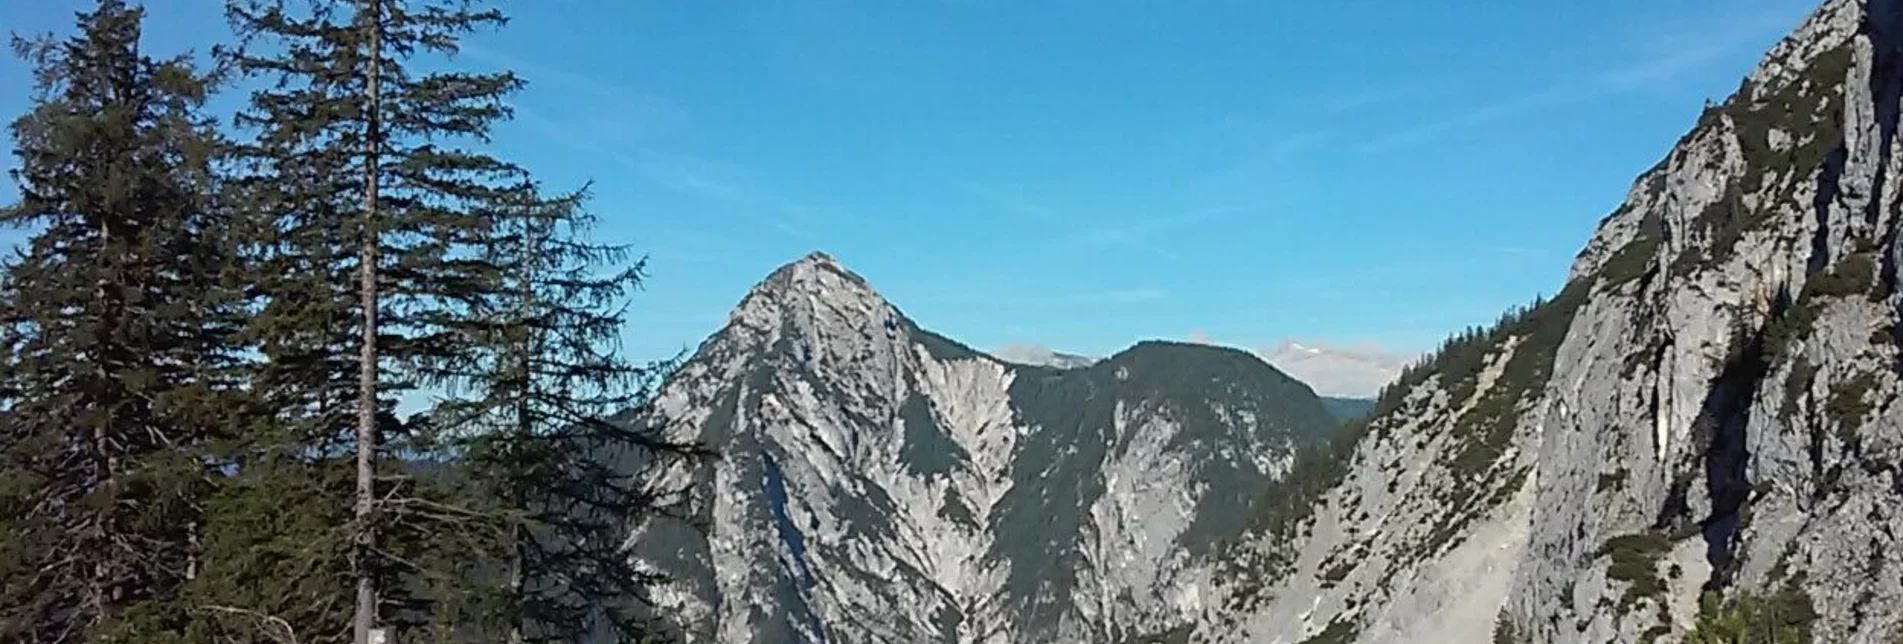 Bergtour Kammspitze - Miesbodensee - Viehbergalm - Öfen - Touren-Impression #1 | © Erlebnisregion Schladming-Dachstein